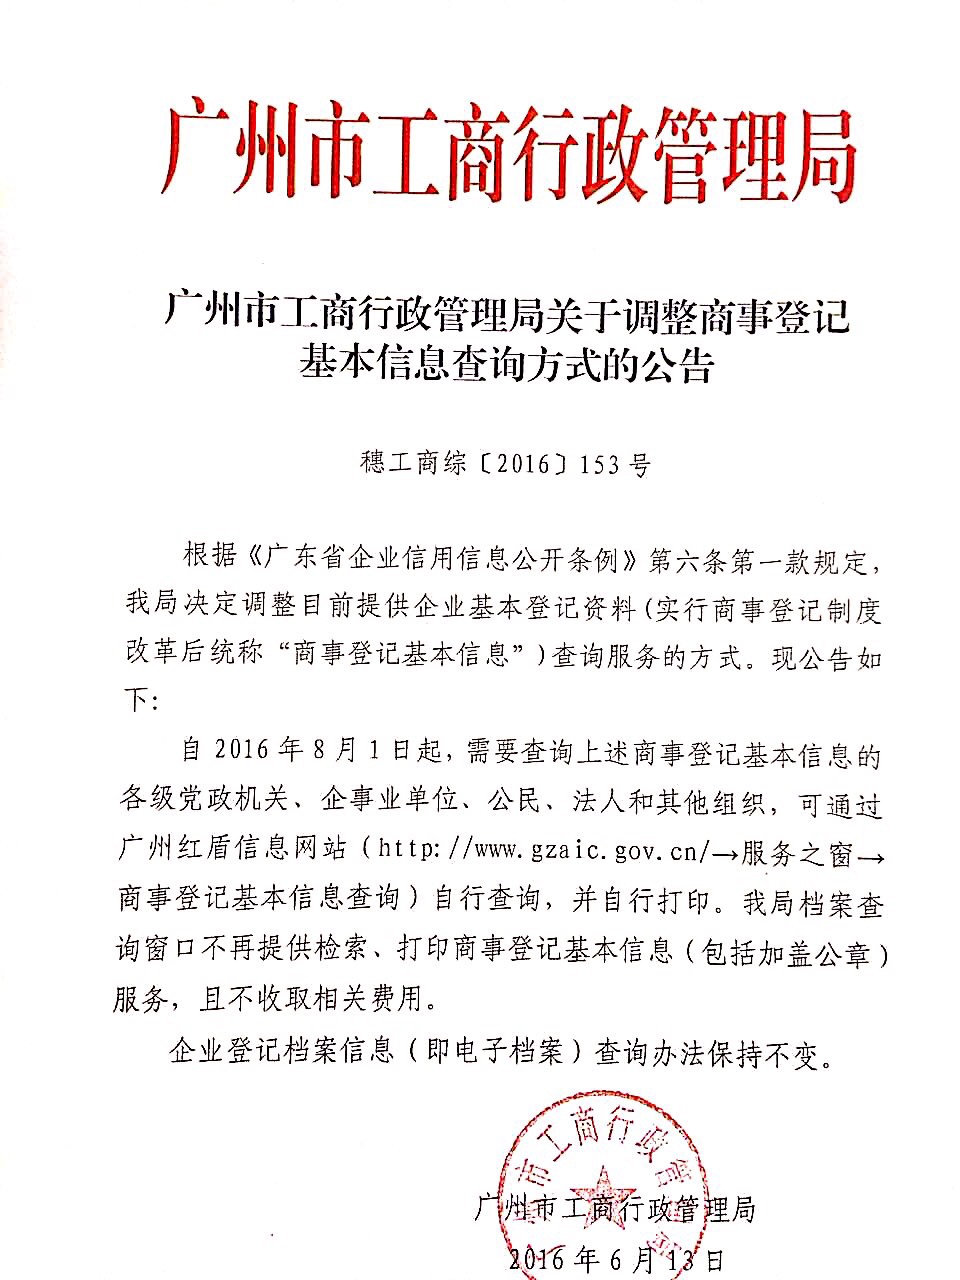 广州市工商局关于调整查档查询企业注册信息的公告（2016年6月13日）